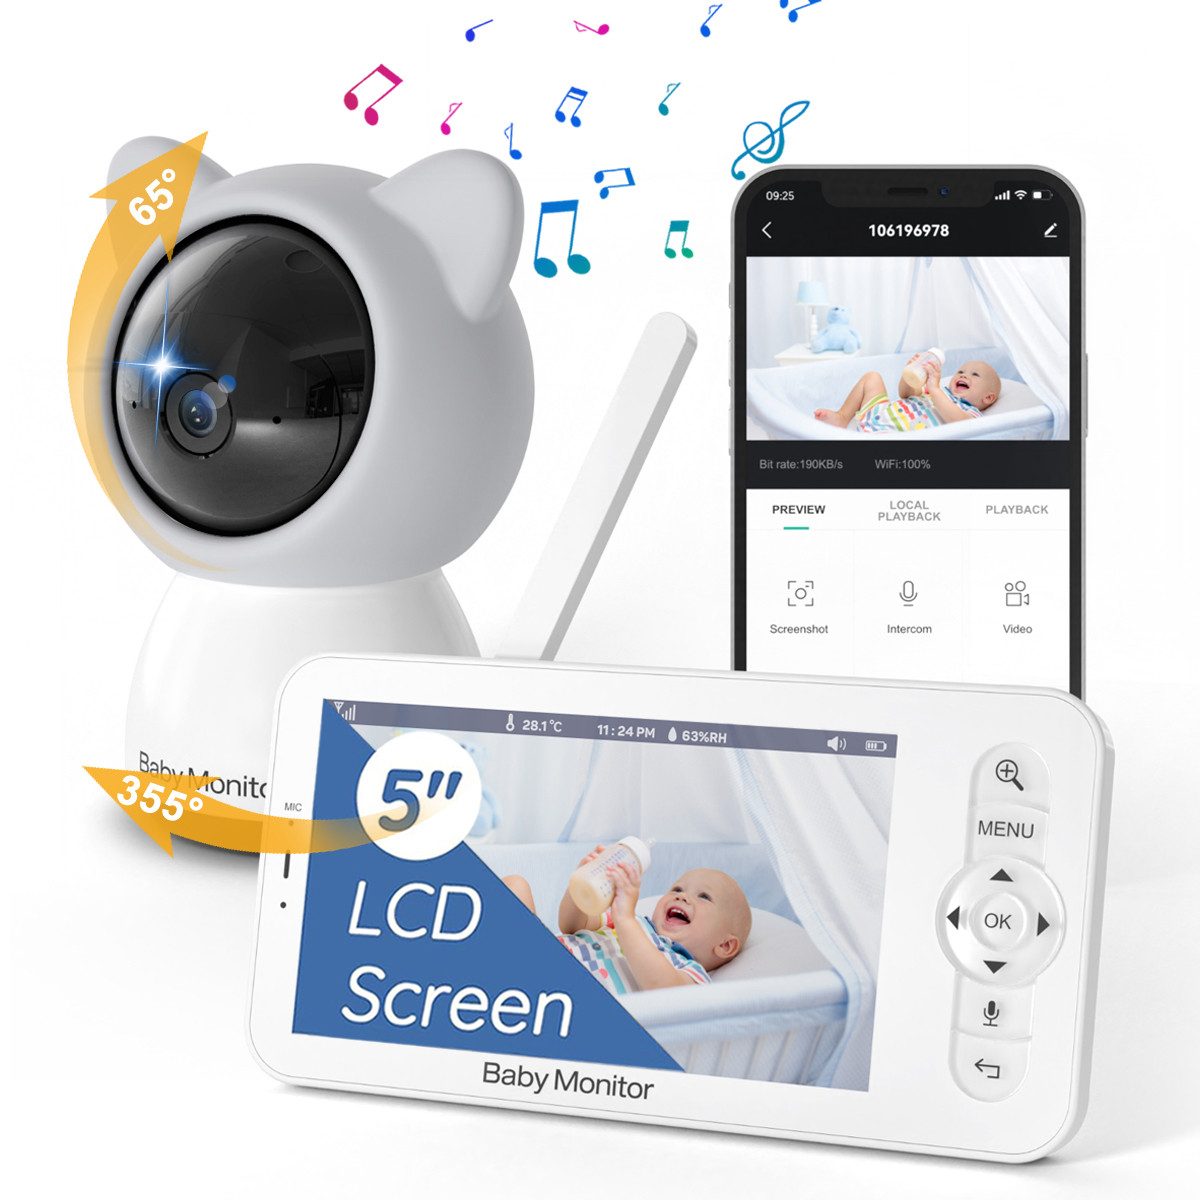 Jioson Video-Babyphone Video-Babyphone Babyphone mit Kamera, Video Baby Monitor Europanorm, habe Schütteln Sie das blaue Lied, Temperatur und Luftfeuchtigkeit Erkennung, Timing, Unterstützung Zwei-Wege-Gegensprechanlage, weinen Erkennung, Infrarot-Licht,für Babys und Senioren,Haustier